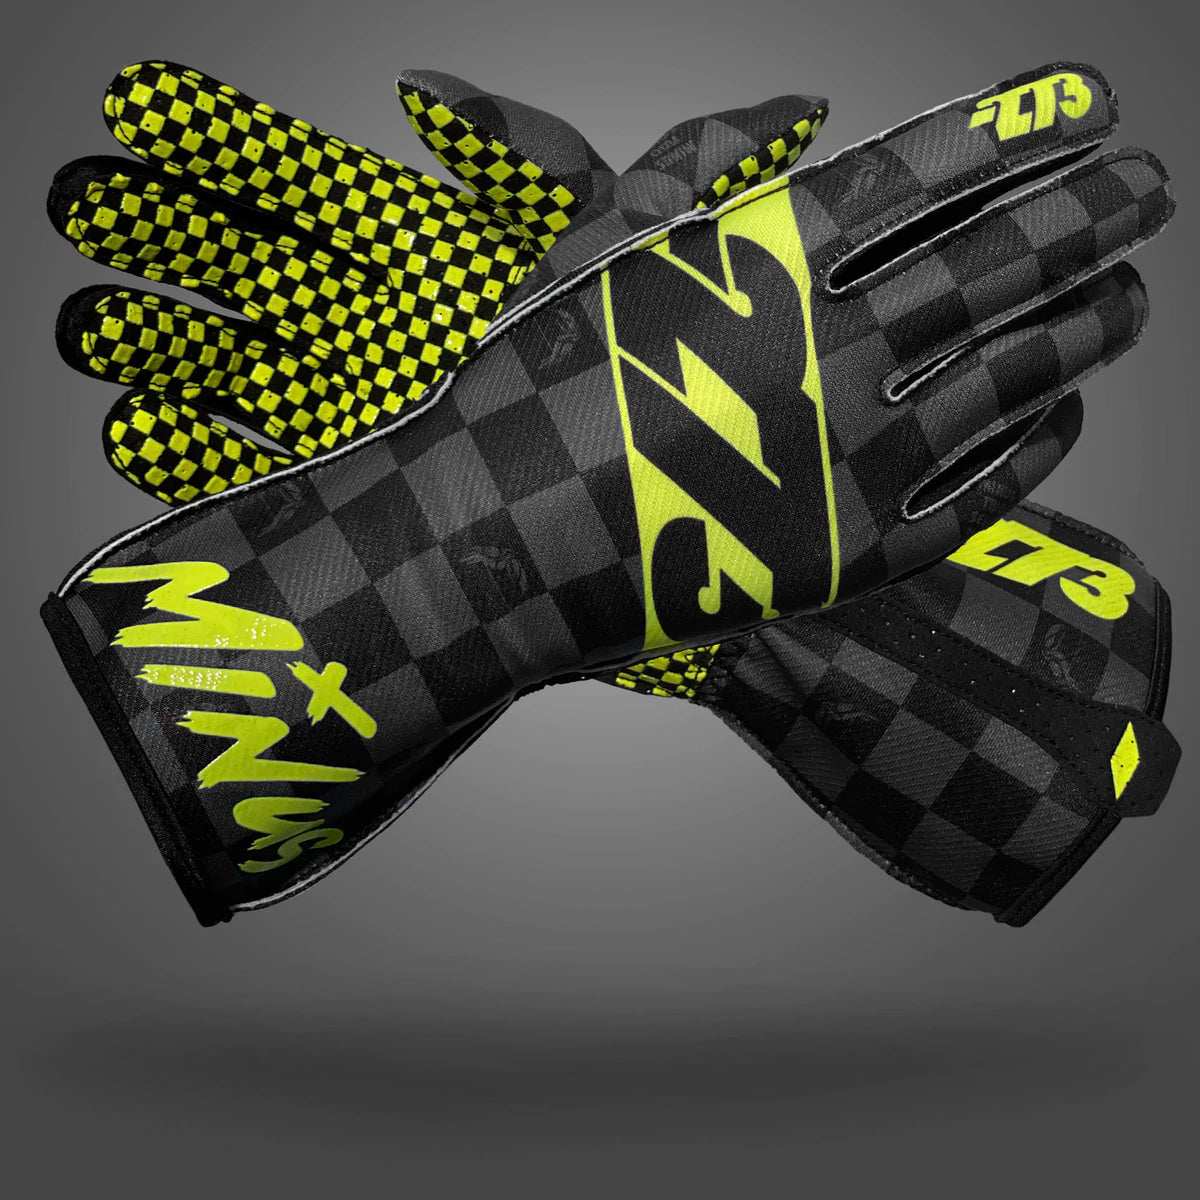 -273 Crenshaw Glove Yellow Black - Medium